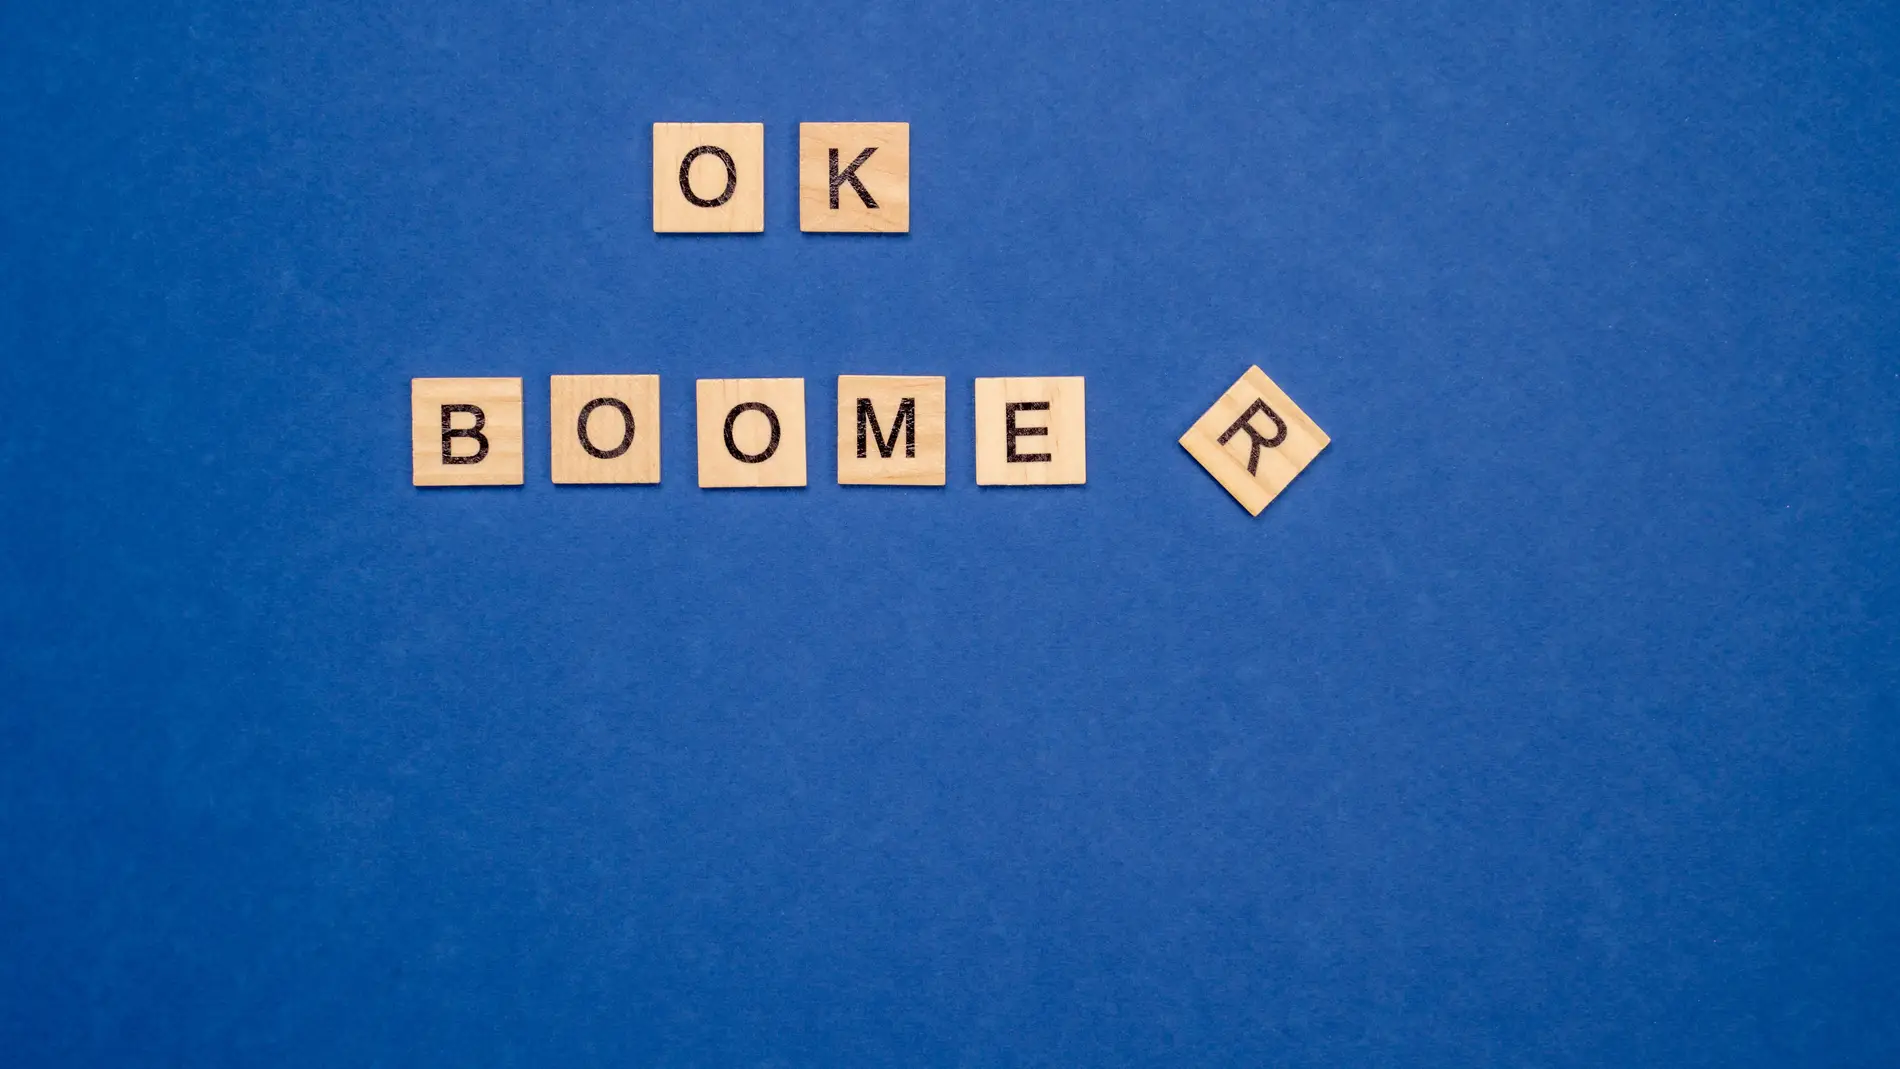 La frase Ok Boomer se hizo viral en las redes sociales.